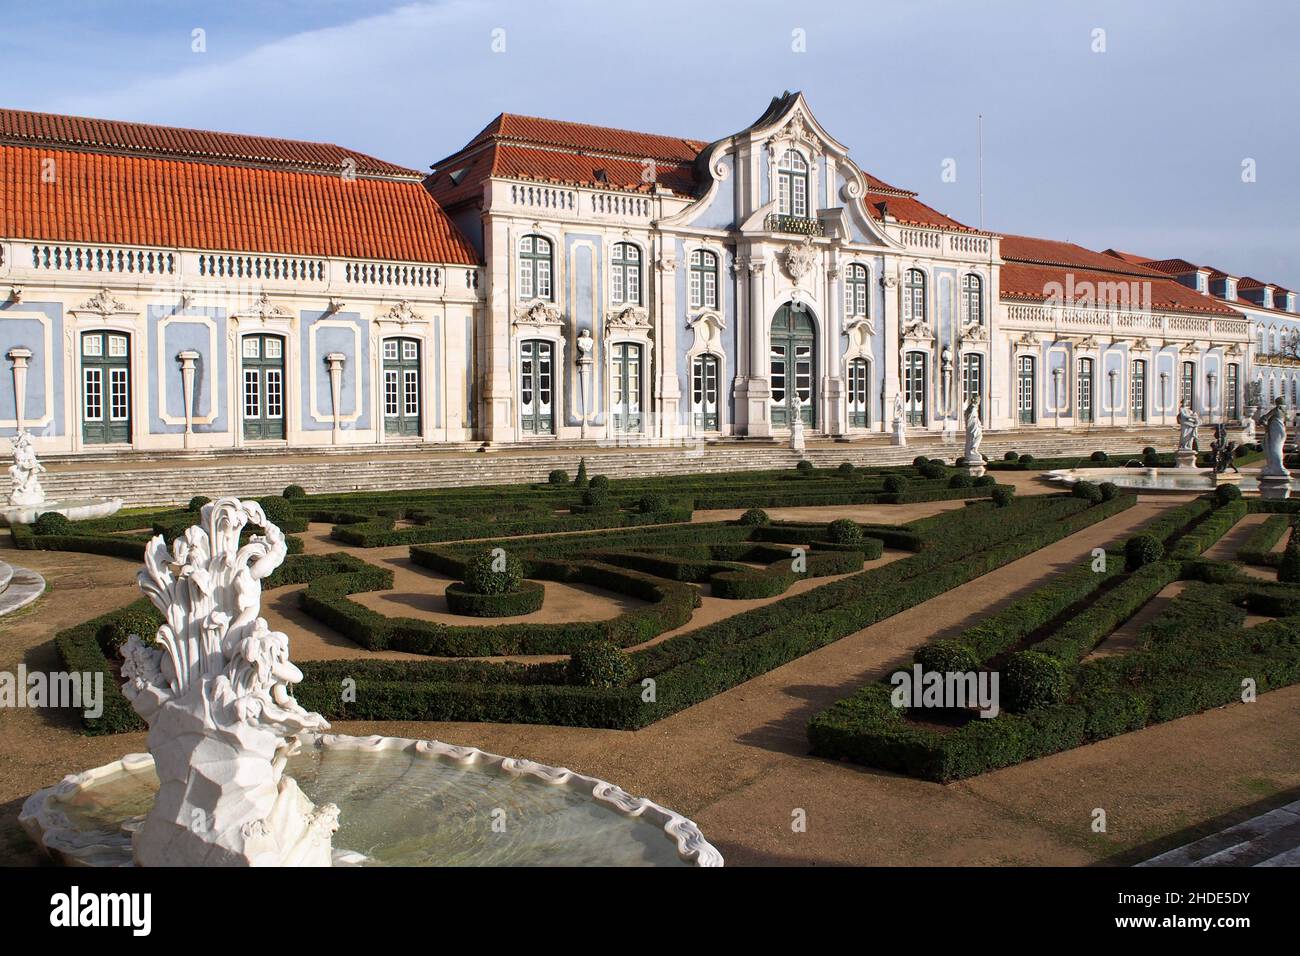 Salón de baile del Palacio de Queluz, cuidados jardines de Malta en la vanguardia, cerca de Lisboa, Portugal Foto de stock